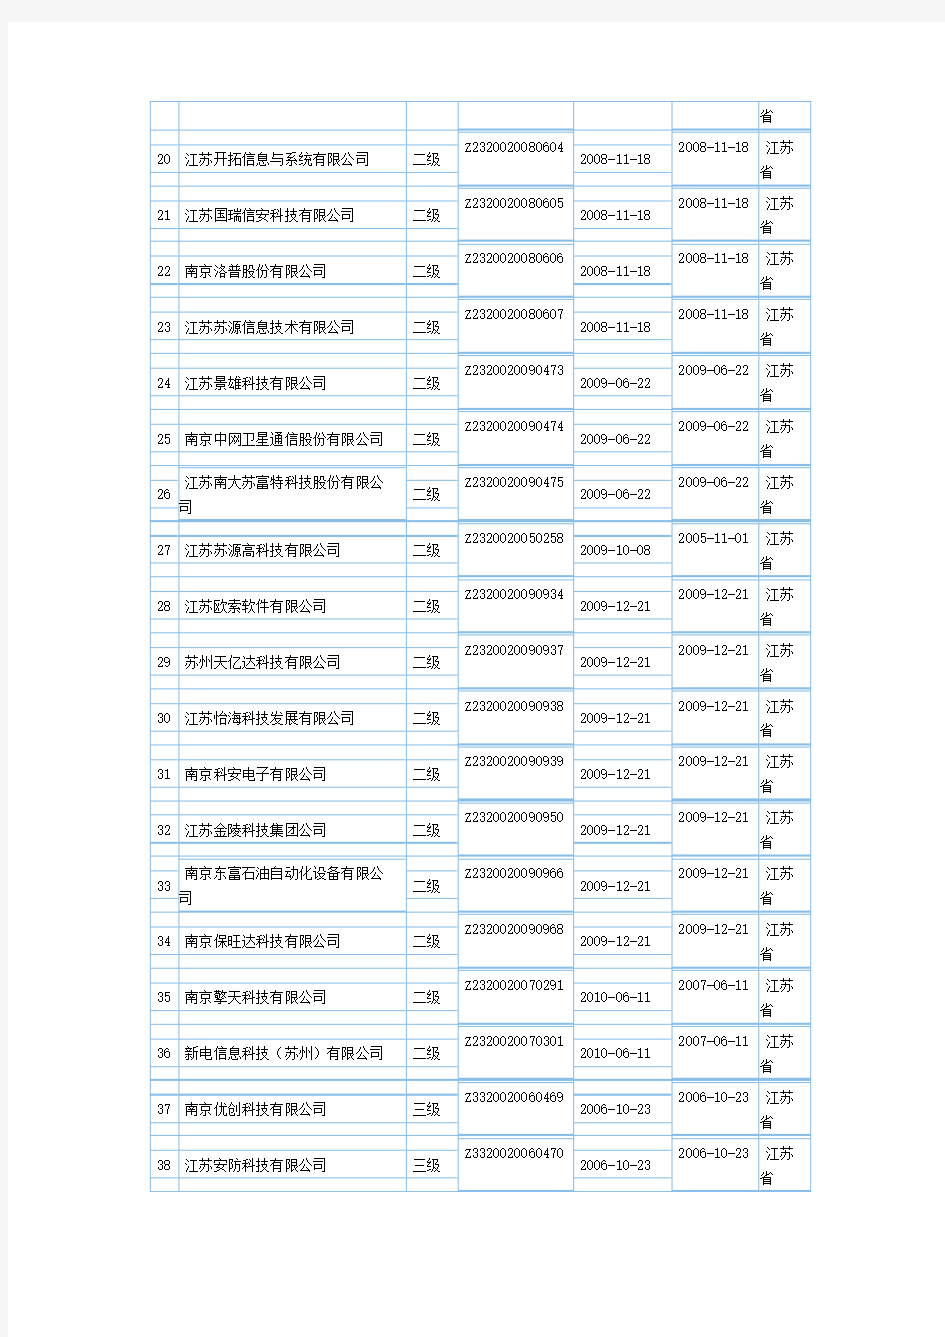 江苏计算机系统集成资质企业名单